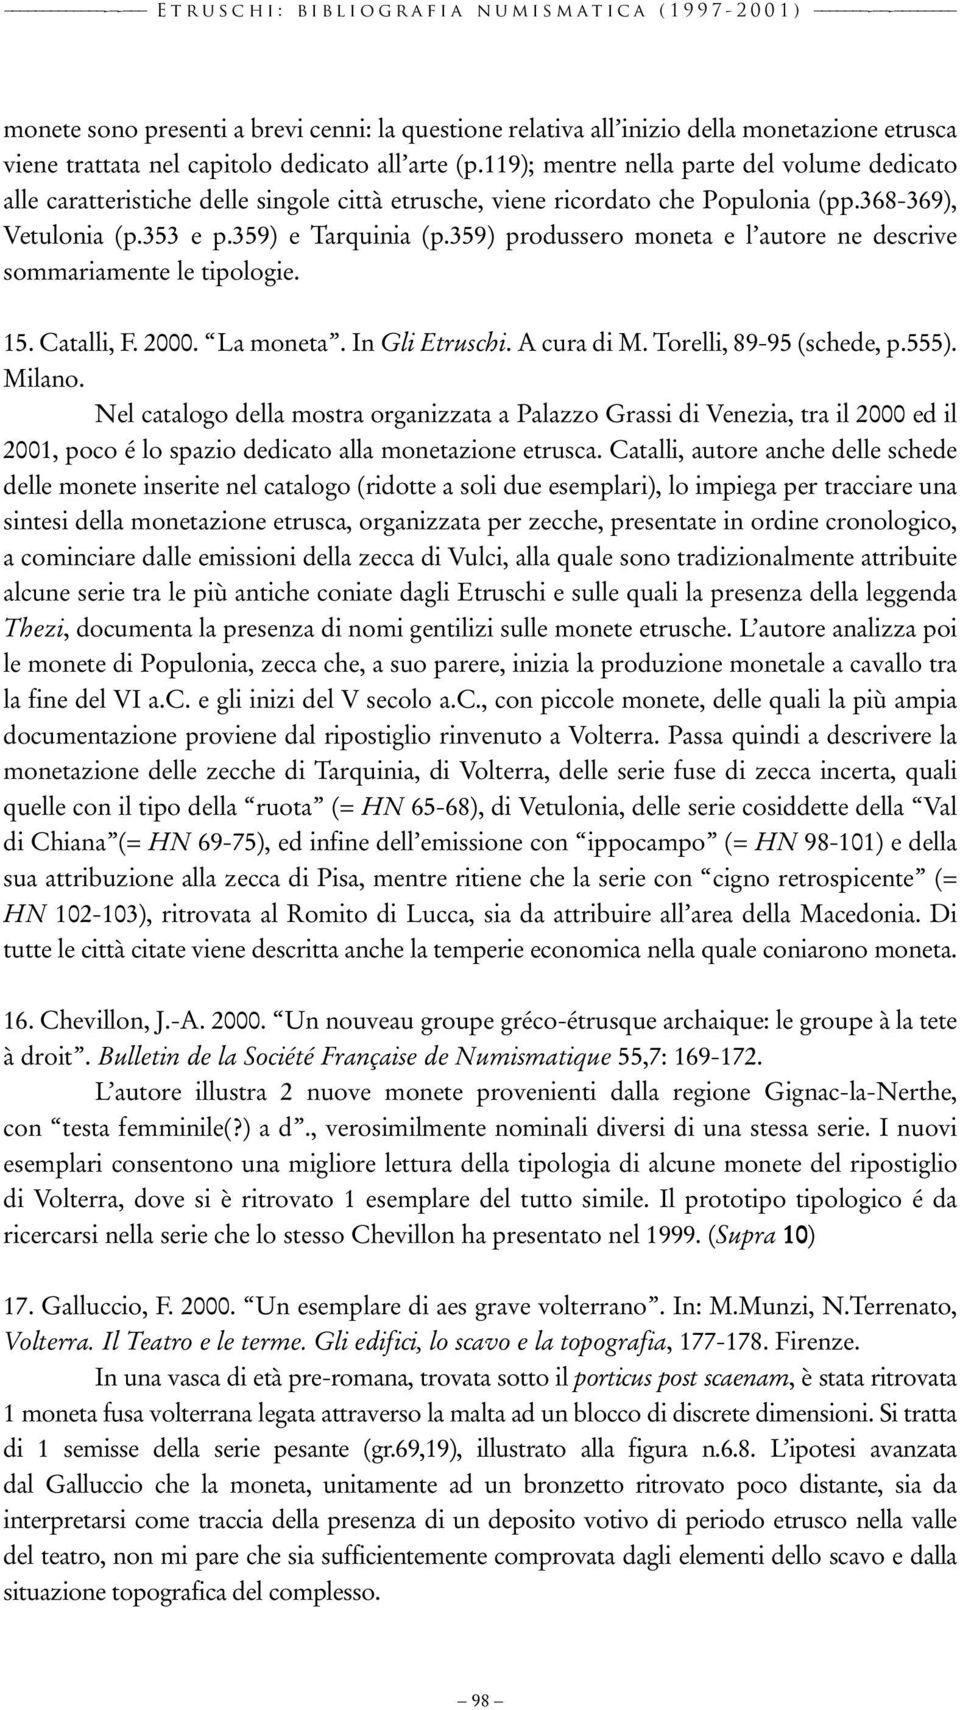 353 e p.359) e Tarquinia (p.359) produssero moneta e l autore ne descrive sommariamente le tipologie. 15. Catalli, F. 2000. La moneta. In Gli Etruschi. A cura di M. Torelli, 89-95 (schede, p.555).